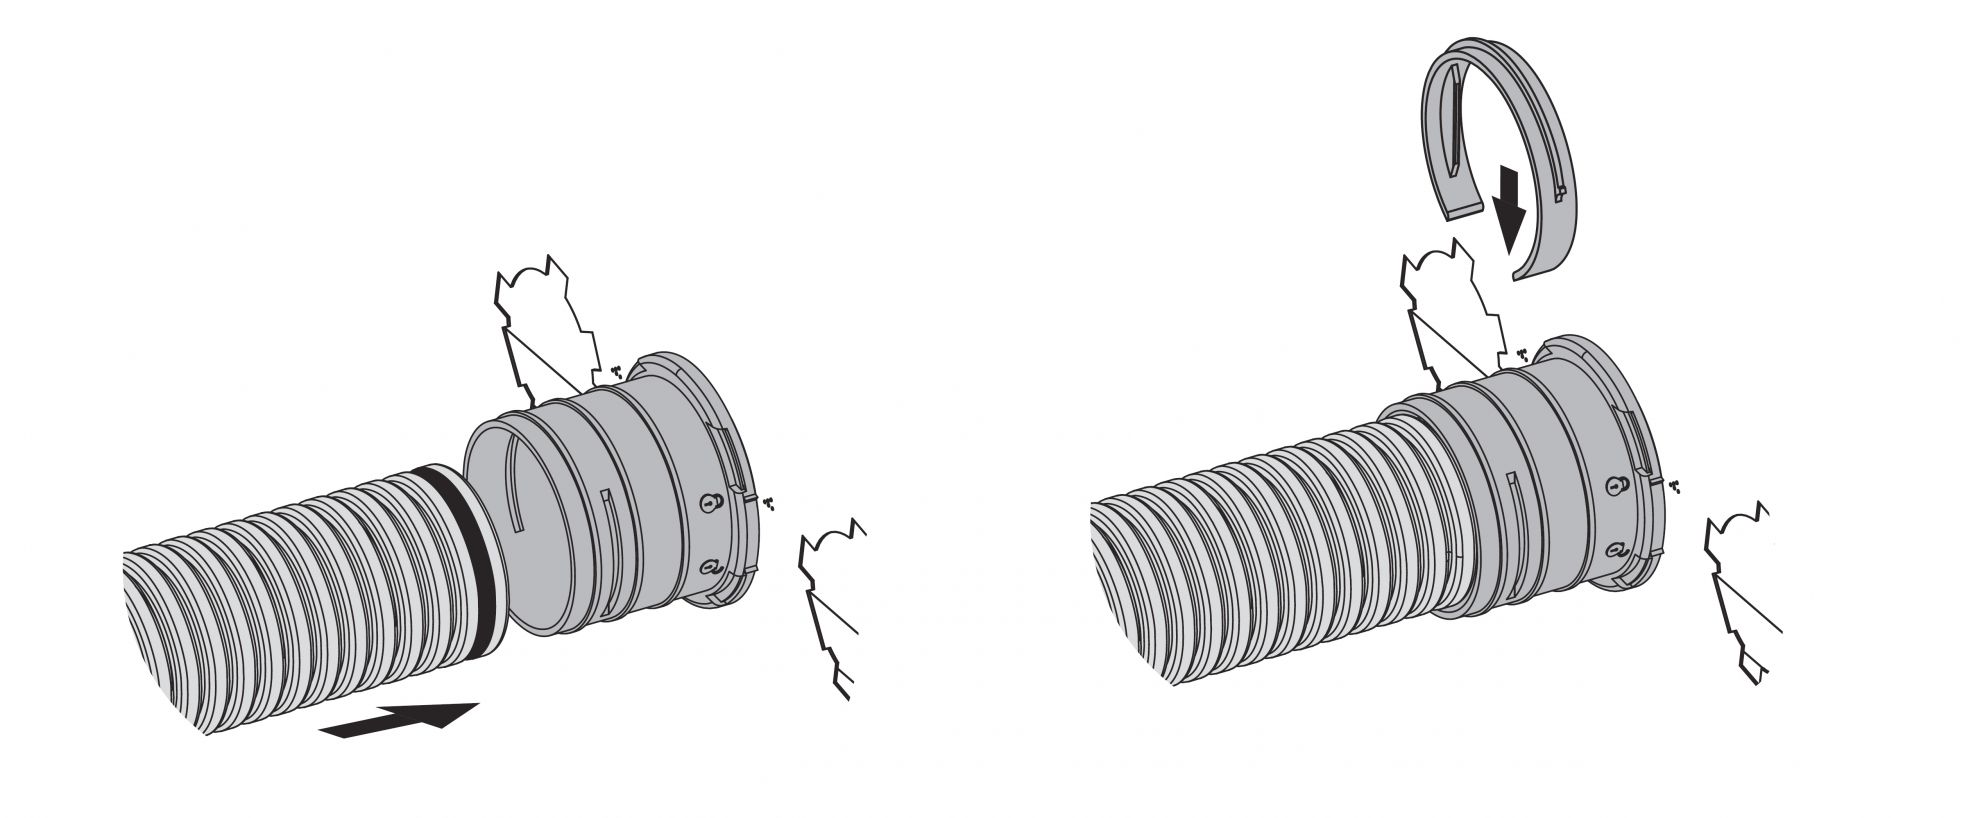 Skrzynka rozprężna służy do połączenia klasycznego kanału wentylacyjnego o średnicy 160 mm z kanałowym systemem wentylacyjnym Flexitech Ø 75 mm